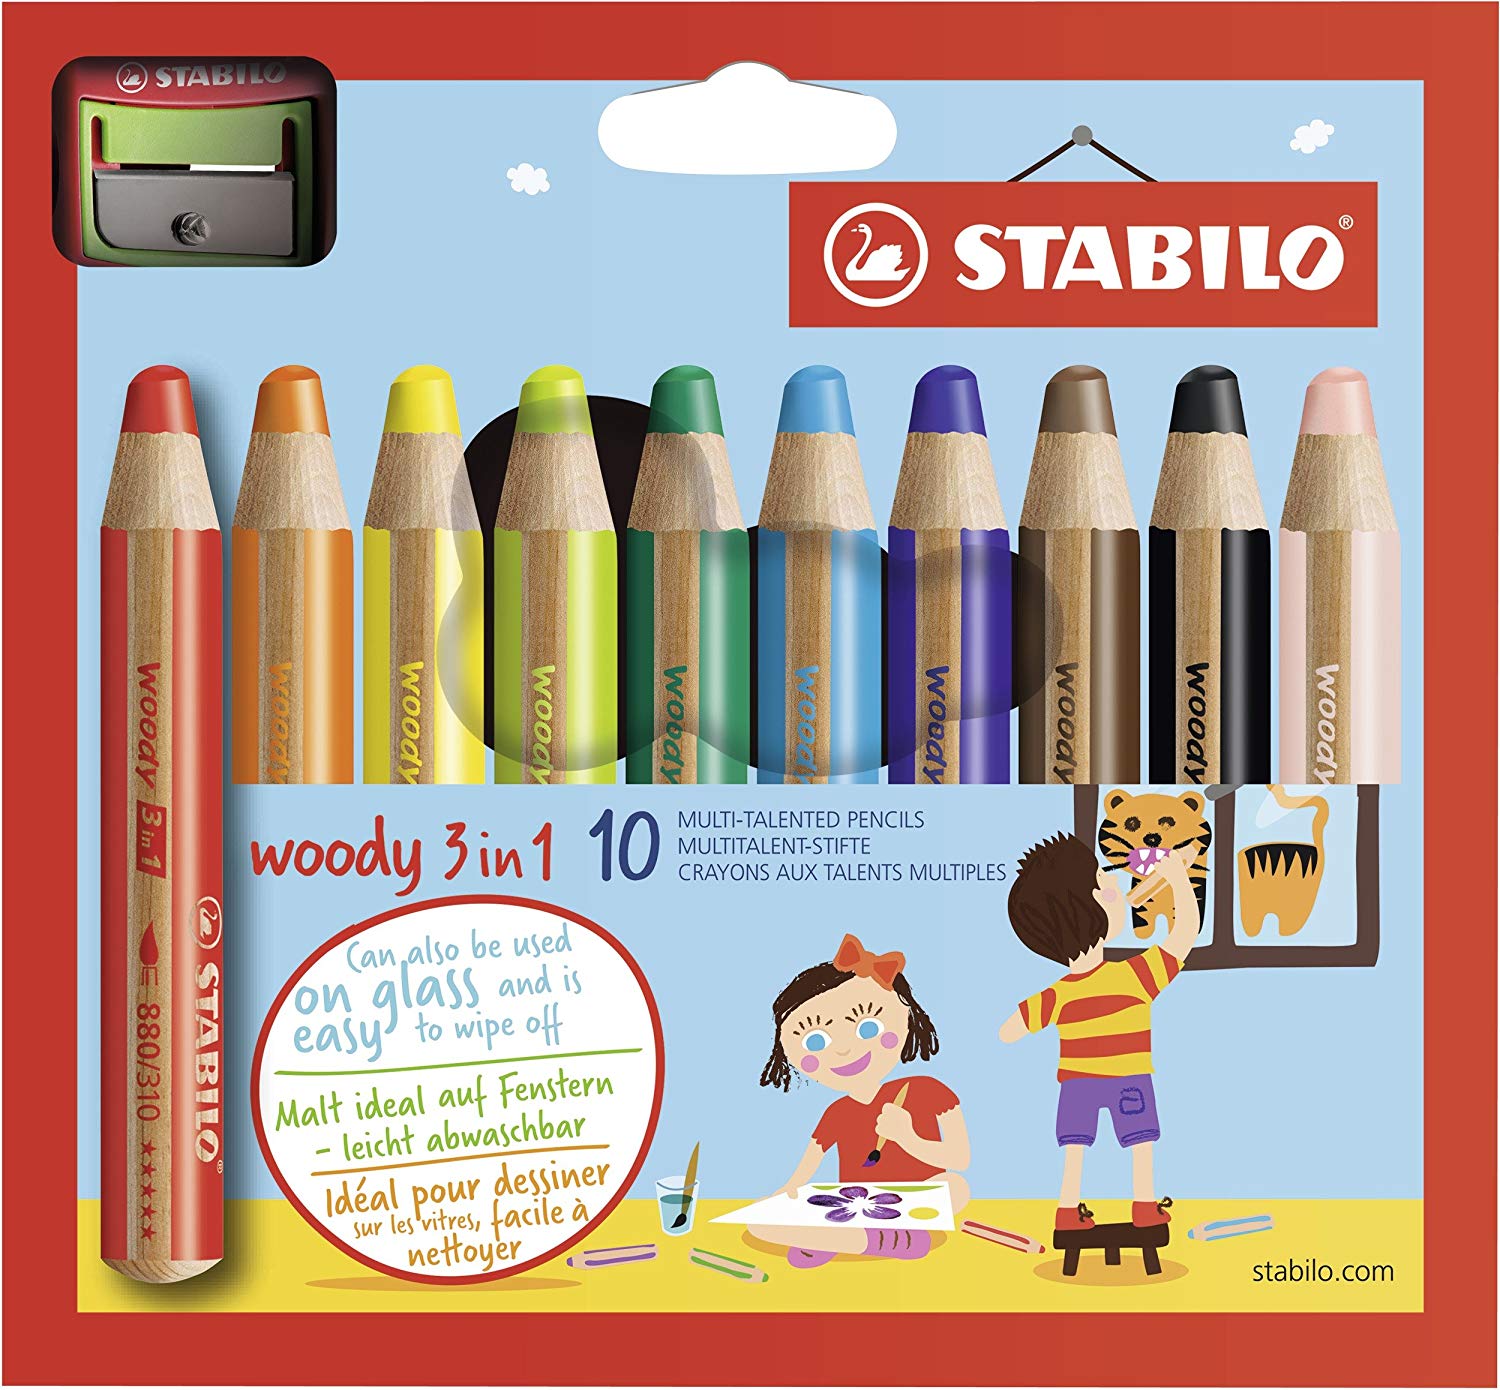 Crayon de coloriage - STABILO woody 3in1 - Étui carton de 10 crayons tout-terrain + taille-crayon